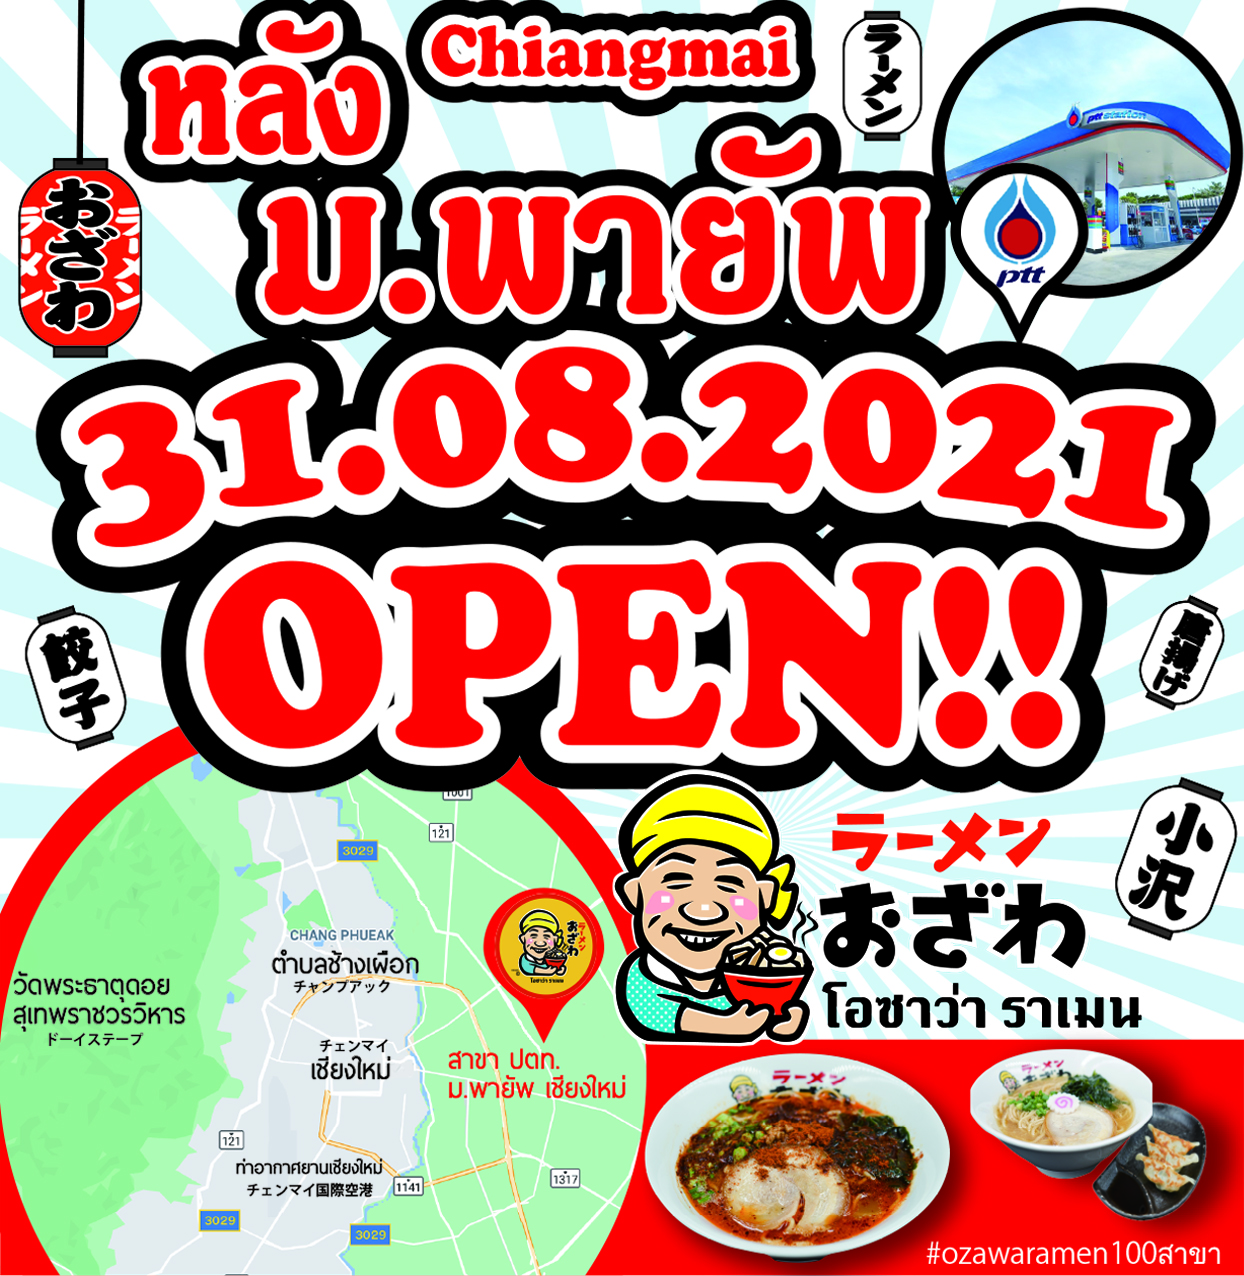 ืNew branch of ozawa ramen will open in Chiangmai on 31sa August